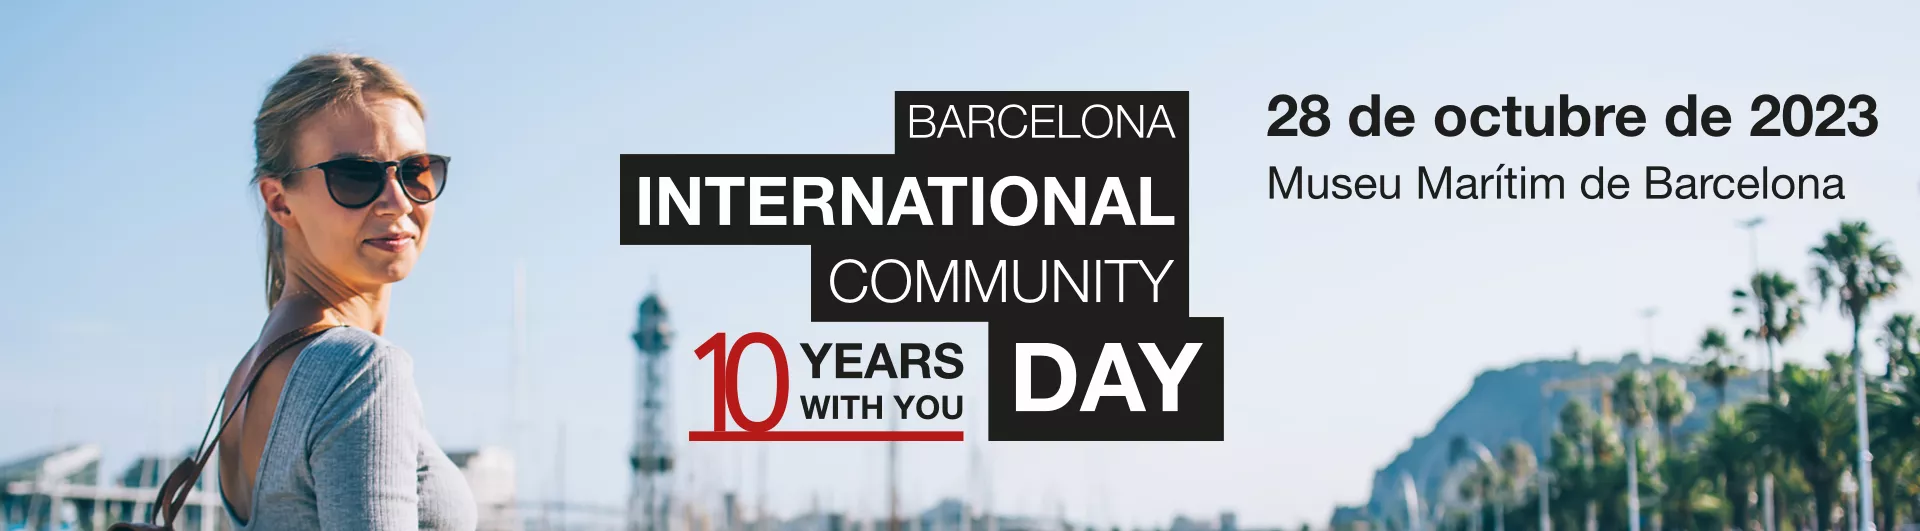 Barcelona International Community Day. 28 de octubre de 2023. Museu Marítim de Barcelona